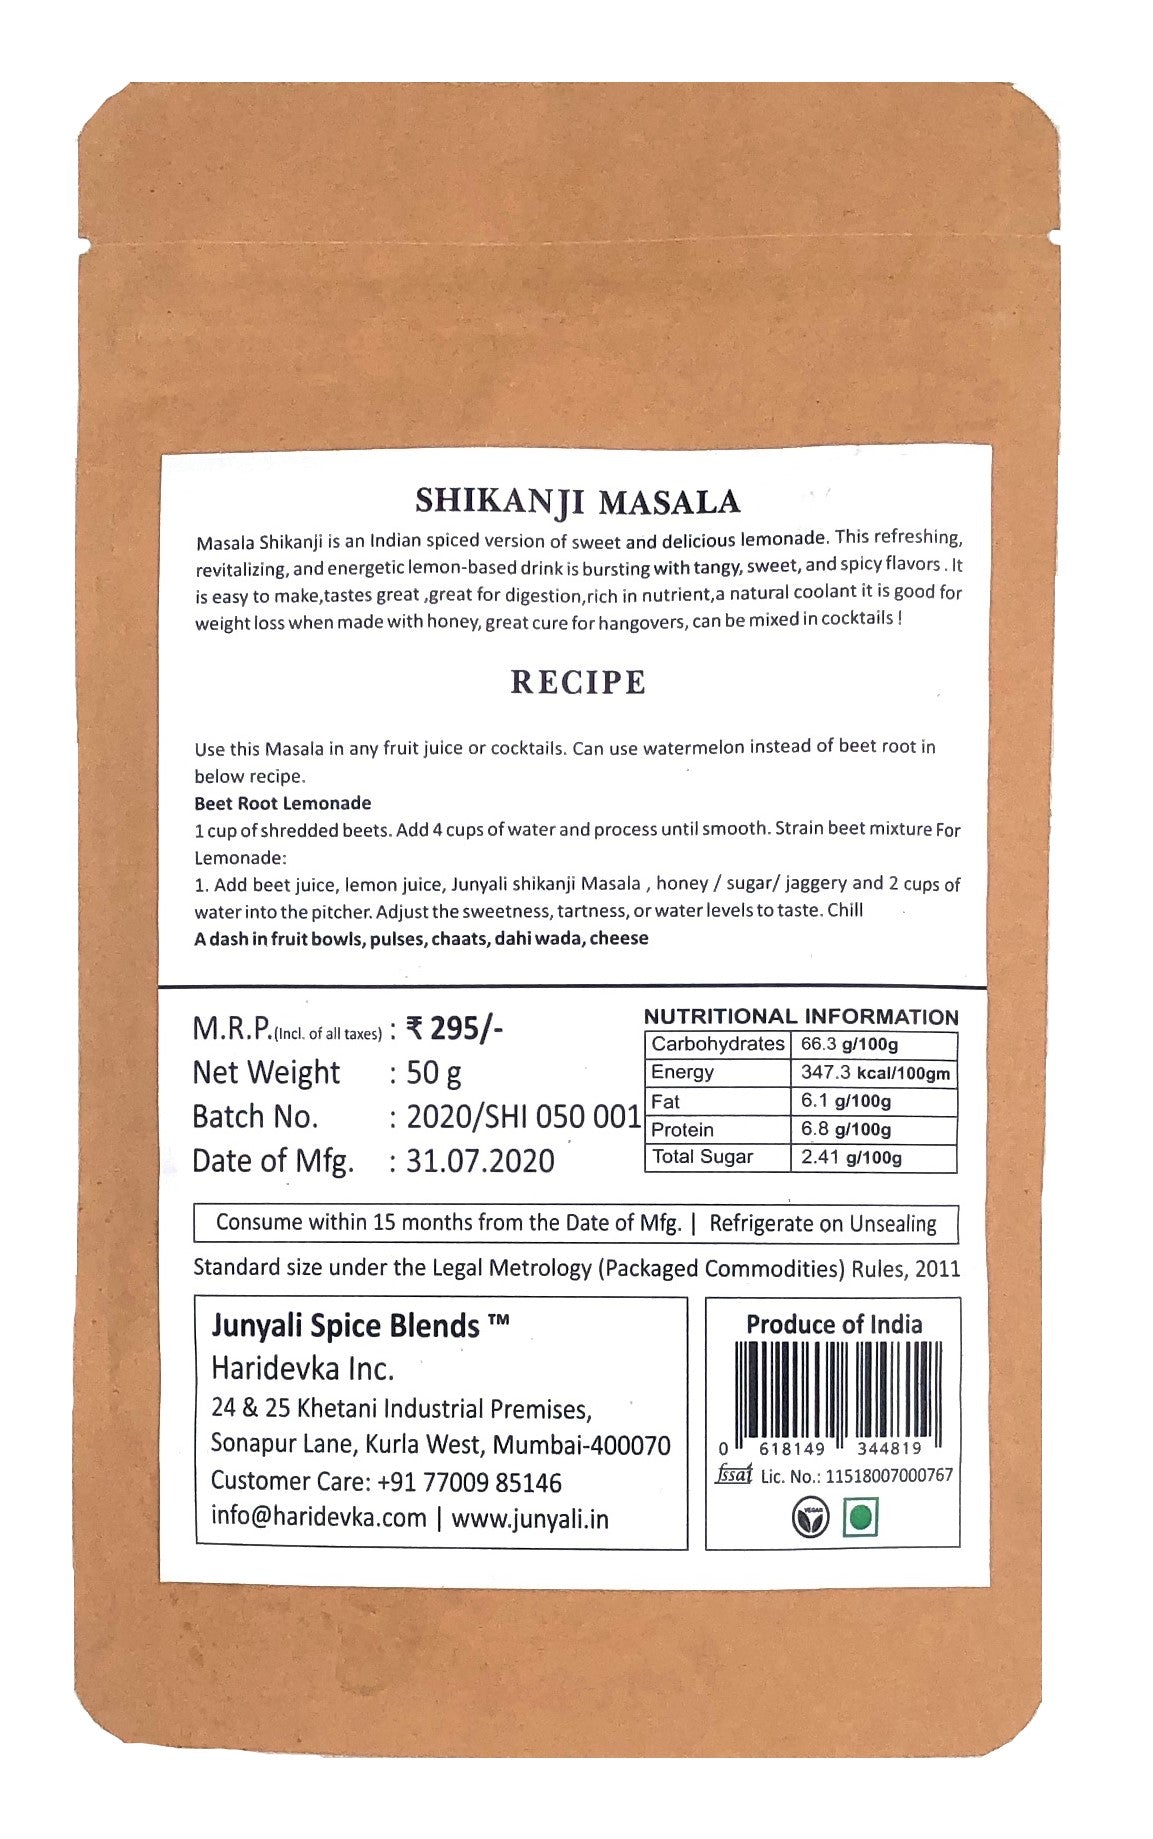 Junyali Pure Natural Organic Shikanji & Chaat Taste Makers